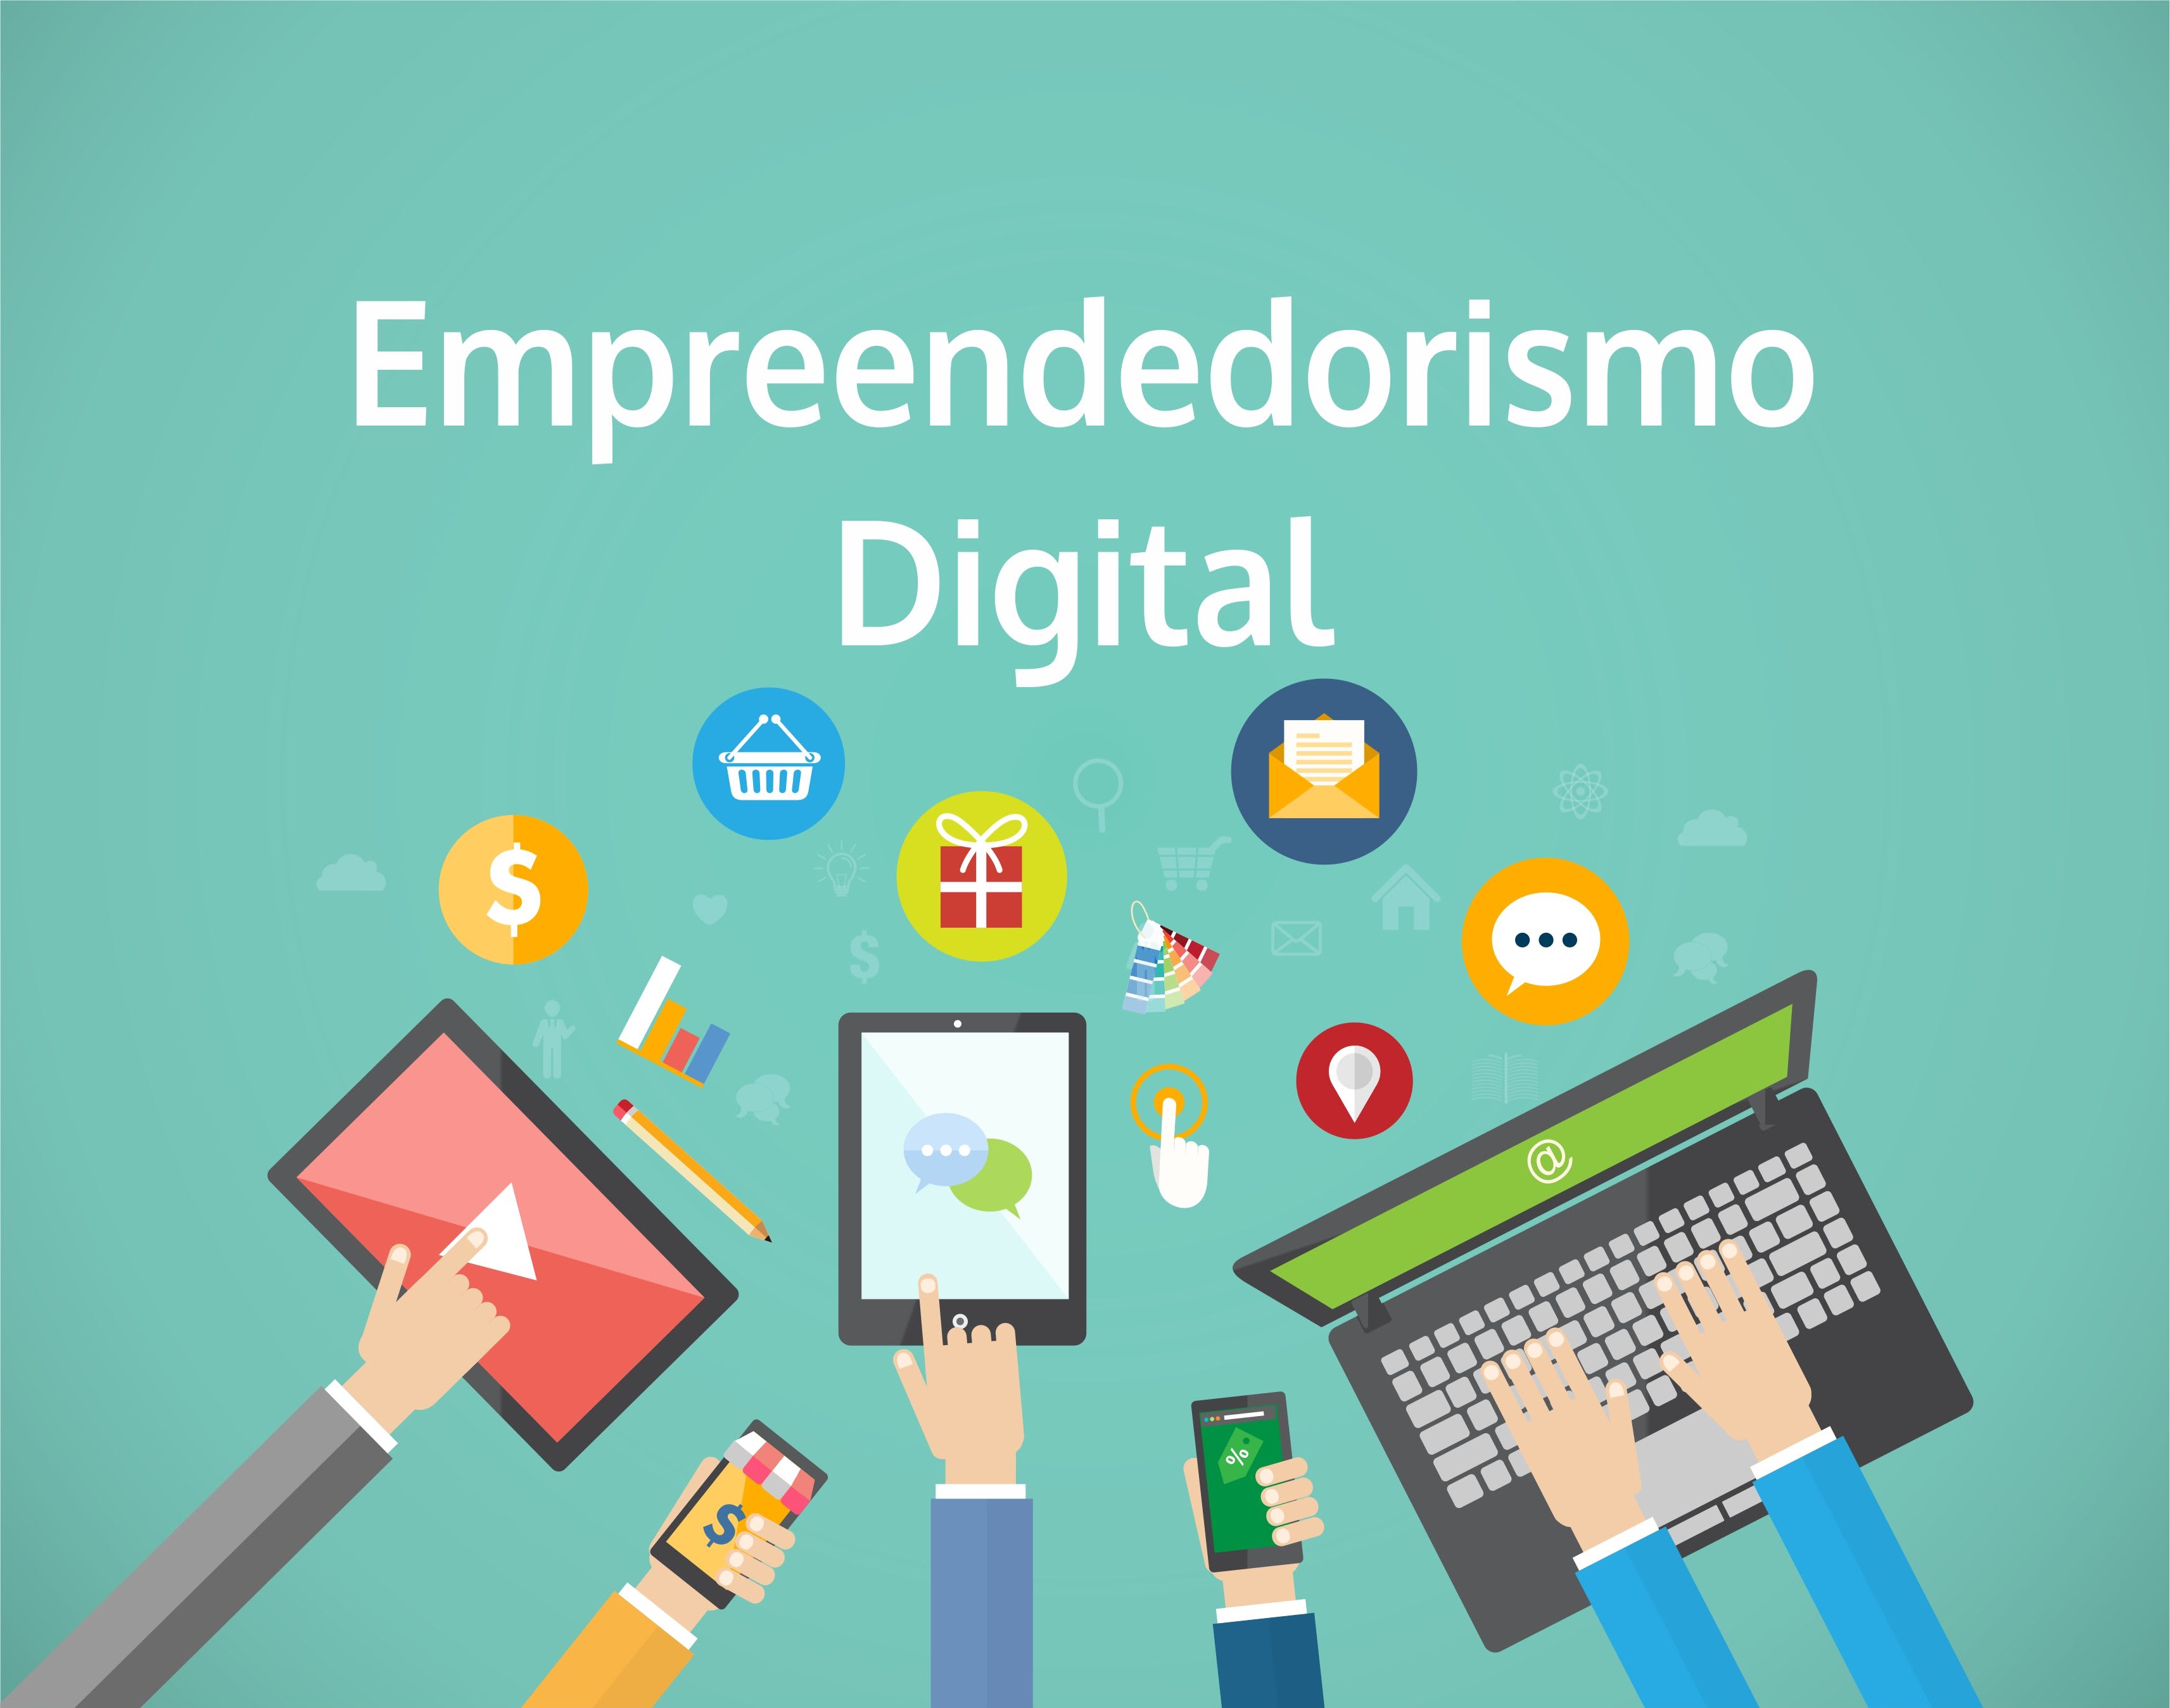 Edmundo Empreendedor Digital